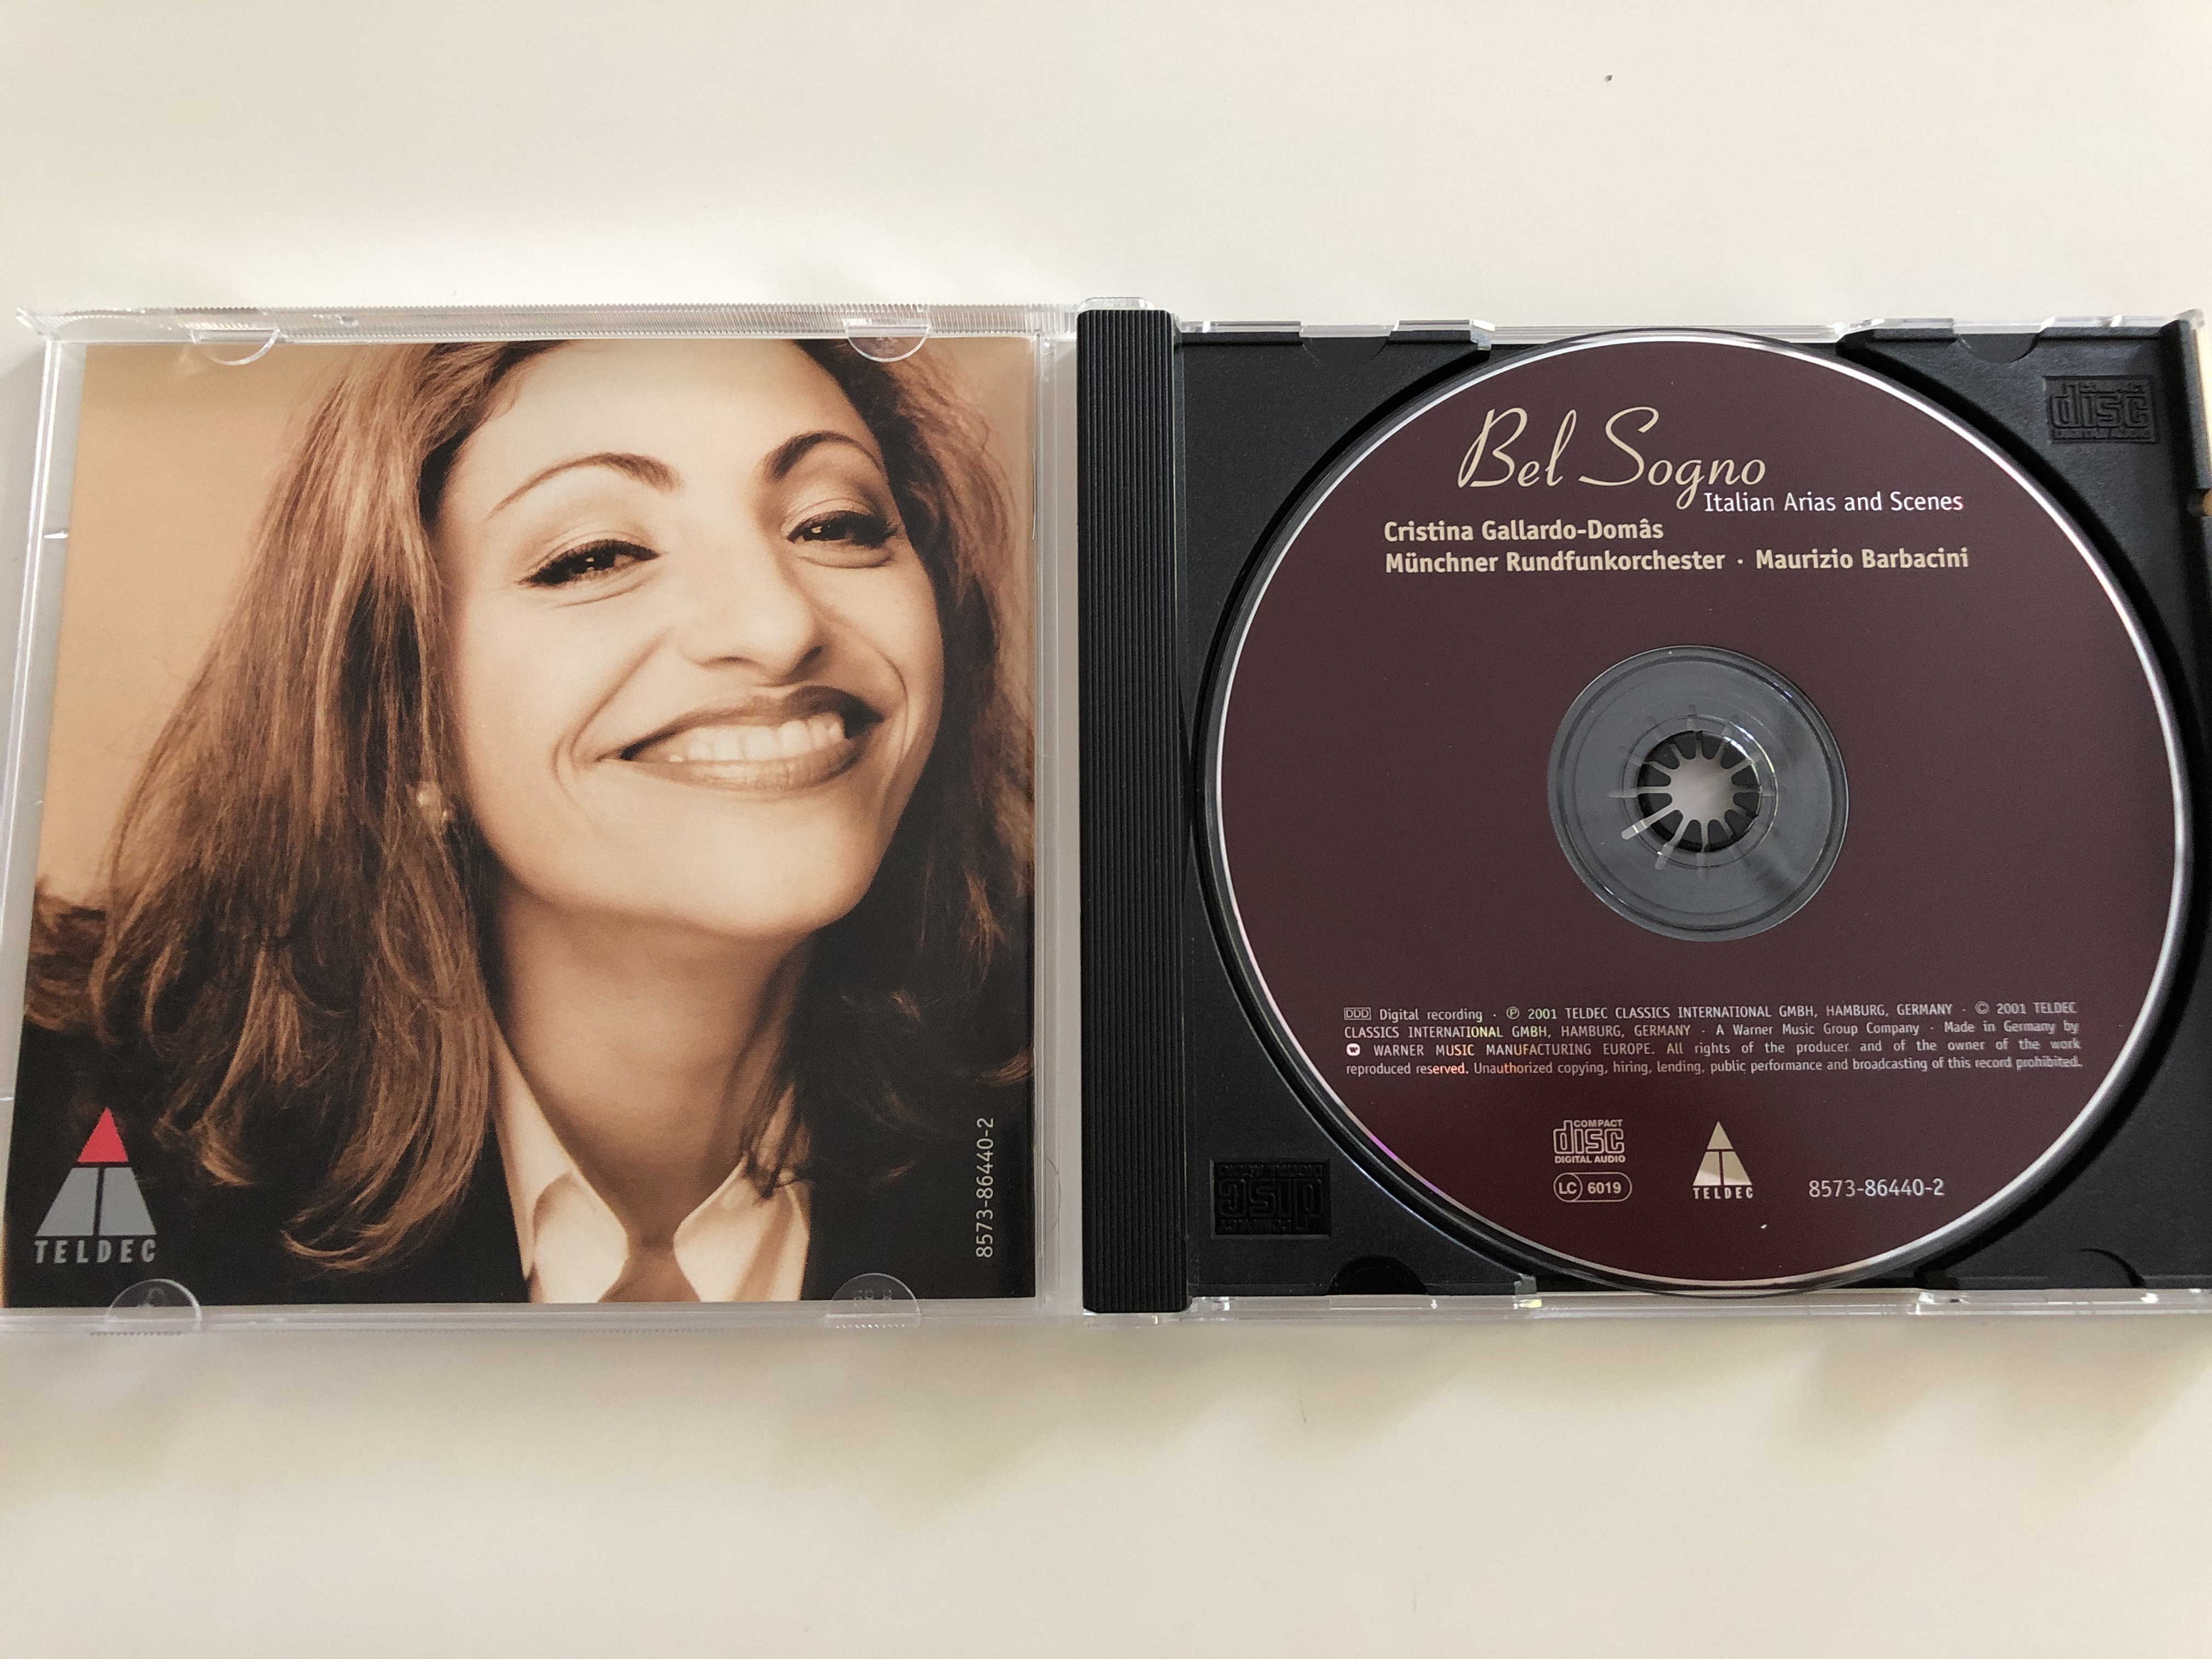 -cristina-gallardo-domas-bel-sogno-italian-arias-and-scenes-m-nchner-rundfunkorchester-conducted-by-maurizio-barbacini-audio-cd-2001-teldec-4-.jpg